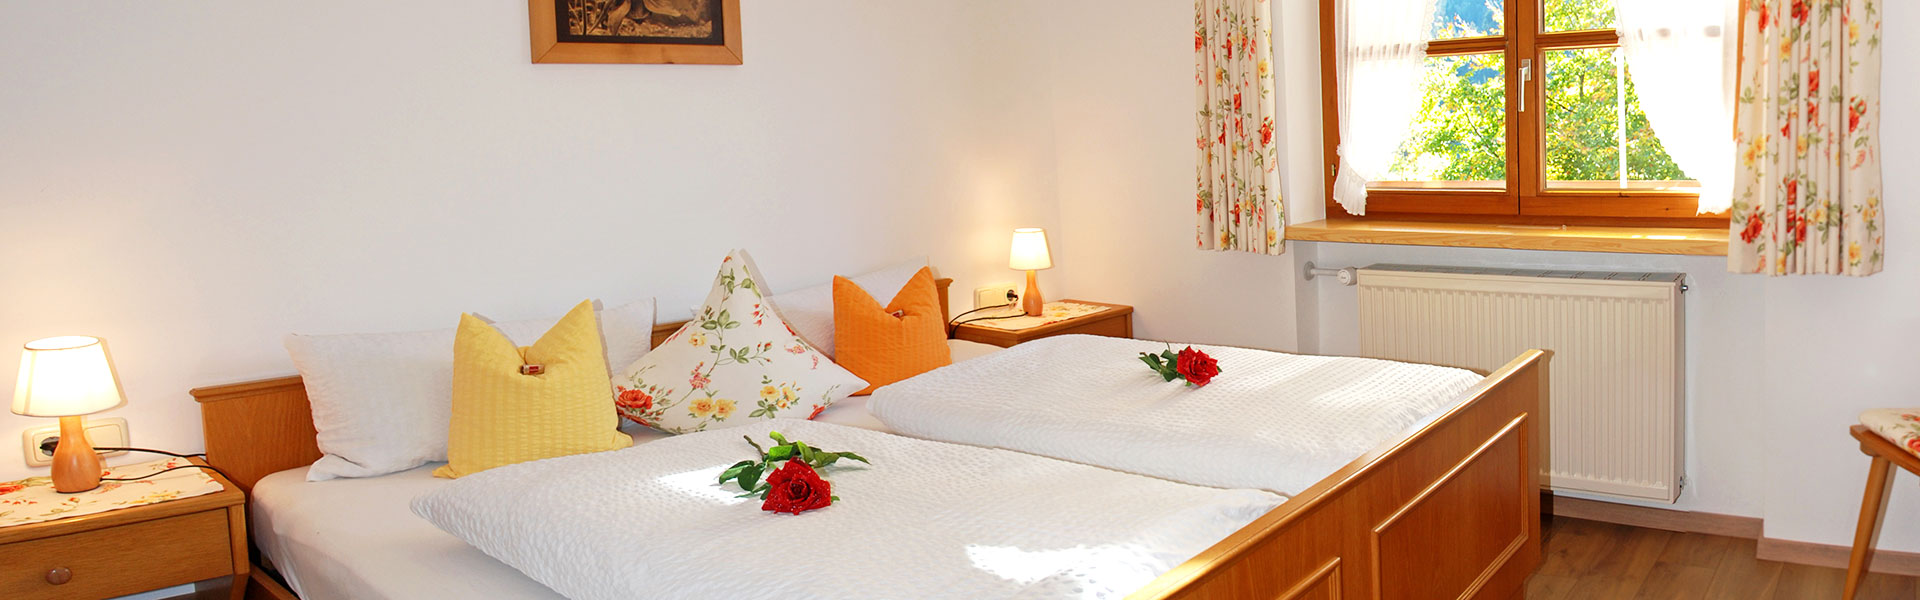 Gemütliches Doppelbett im Schlafzimmer der Ferienwohnung Fellhorn im Haus Narzisse.